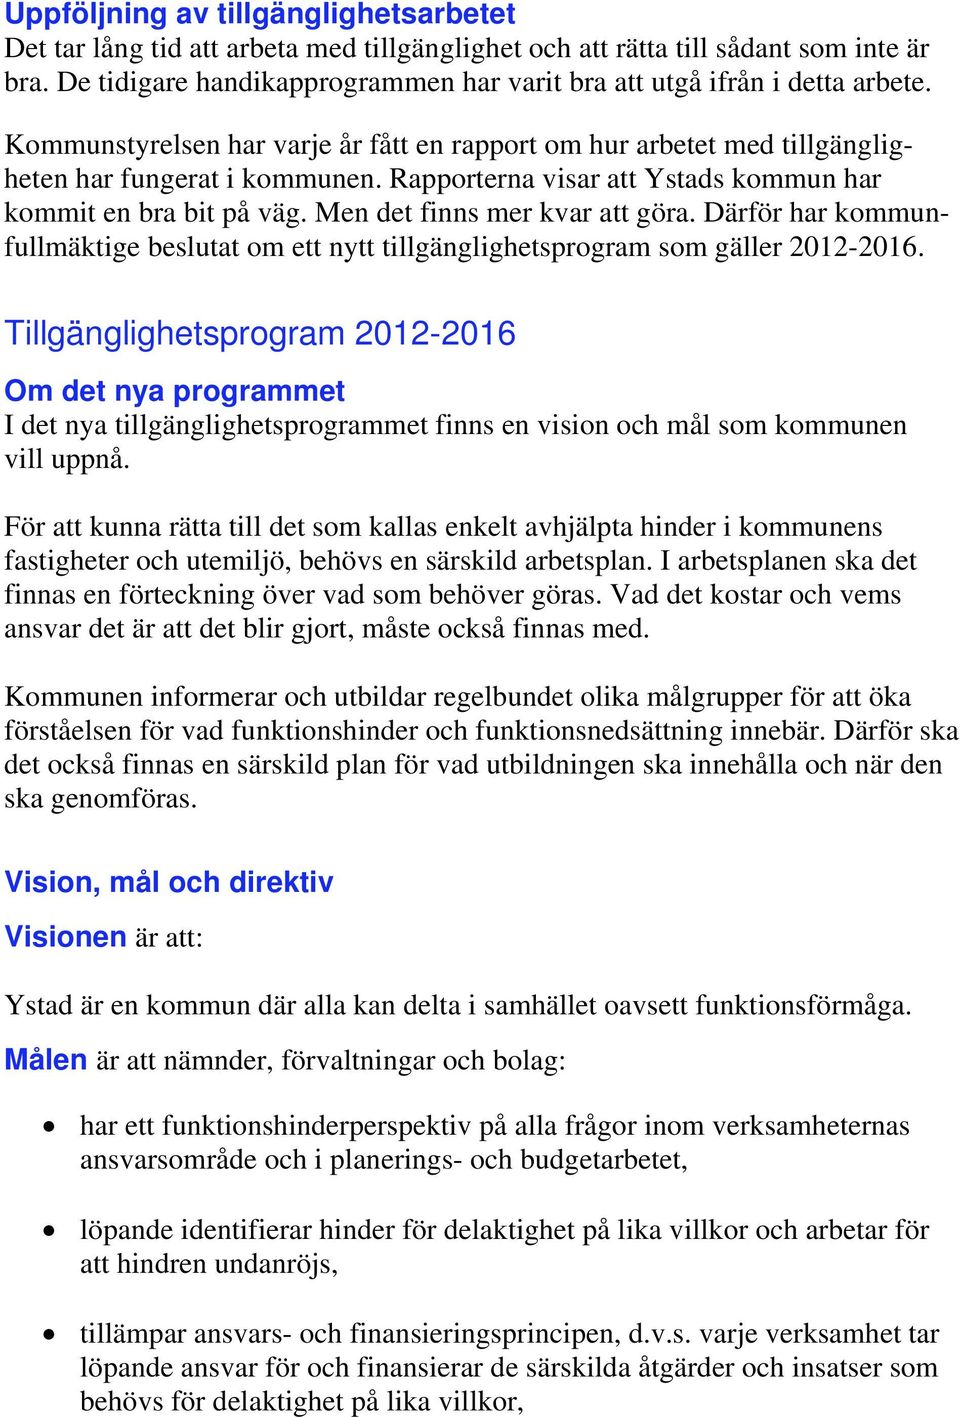 Rapporterna visar att Ystads kommun har kommit en bra bit på väg. Men det finns mer kvar att göra. Därför har kommunfullmäktige beslutat om ett nytt tillgänglighetsprogram som gäller 2012-2016.